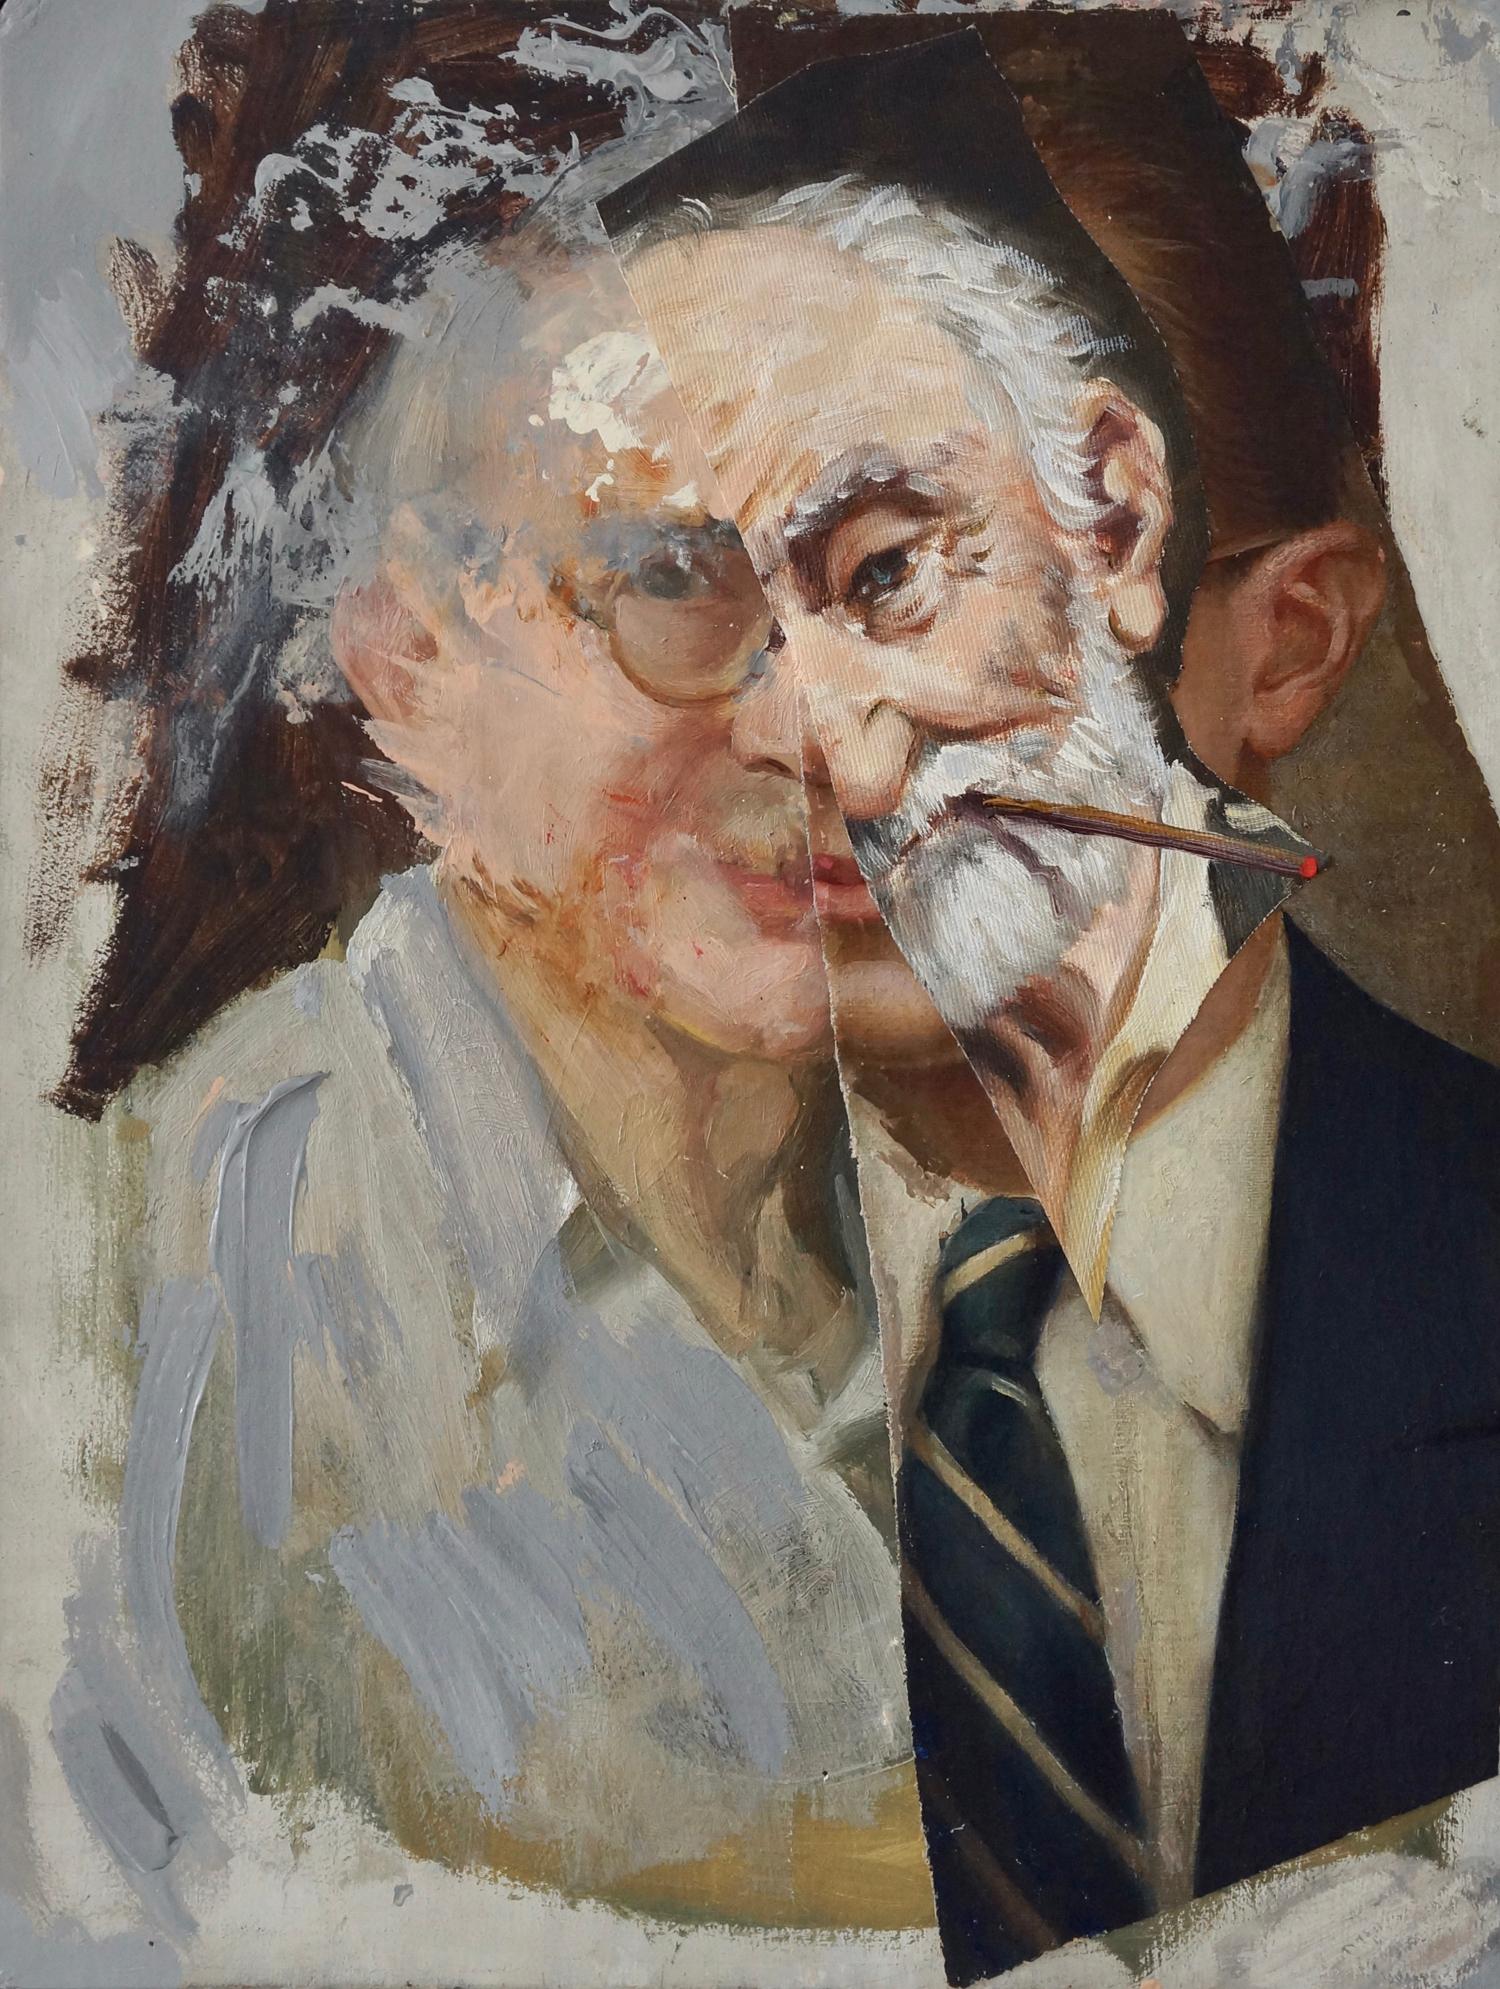 Portrait Painting John Baker - « Old Madman 4 », peinture acrylique, portrait, collage, tons chair, gris, brun